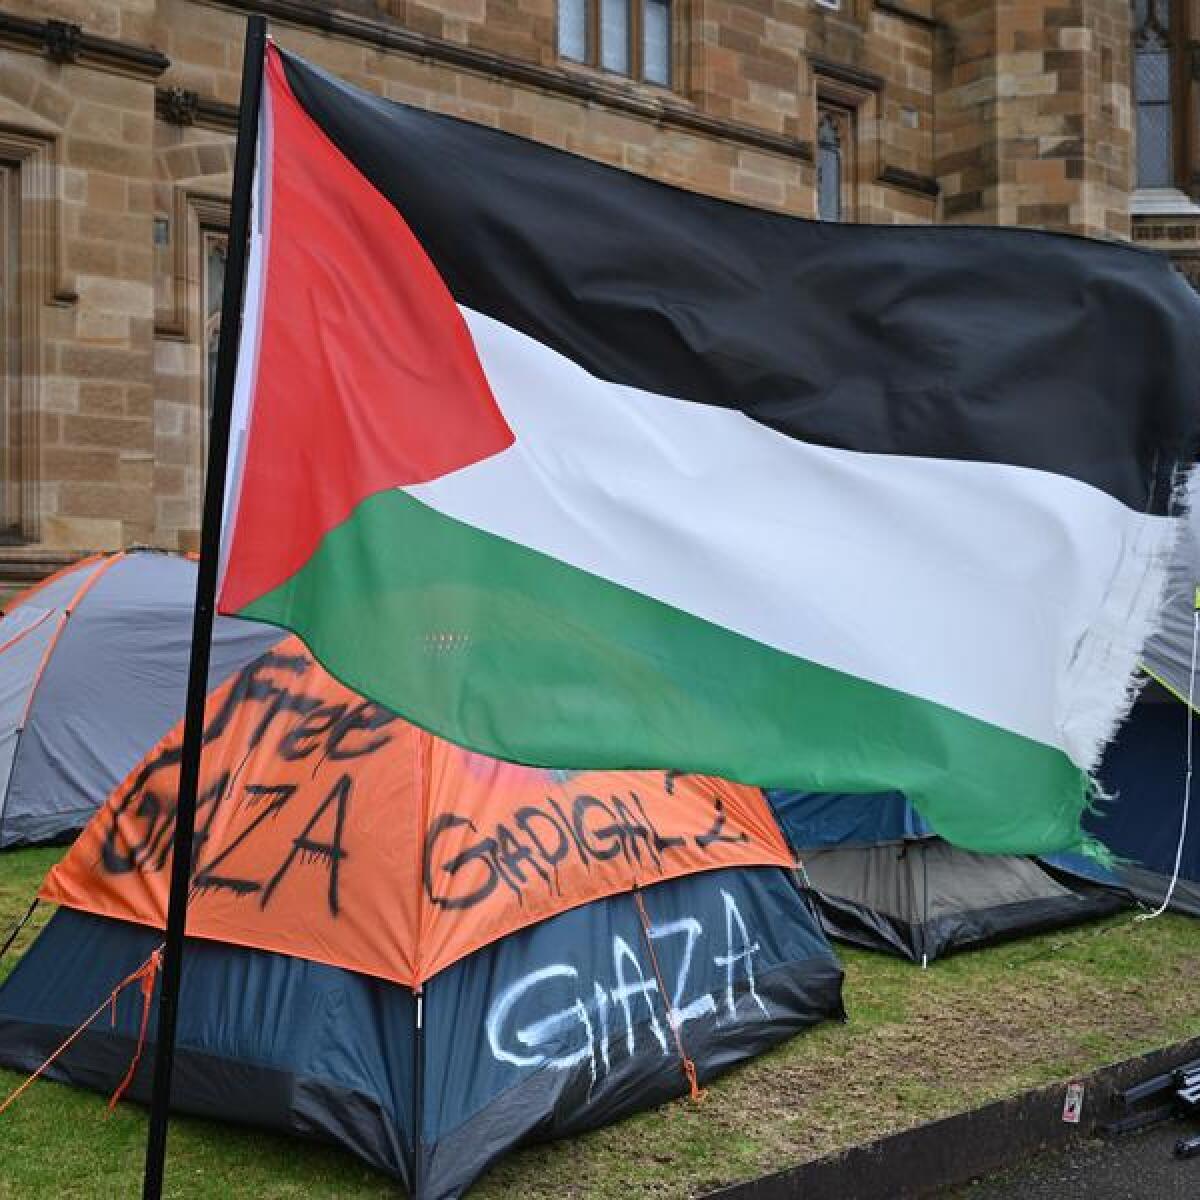 Pro-Palestine camp at University of Sydney